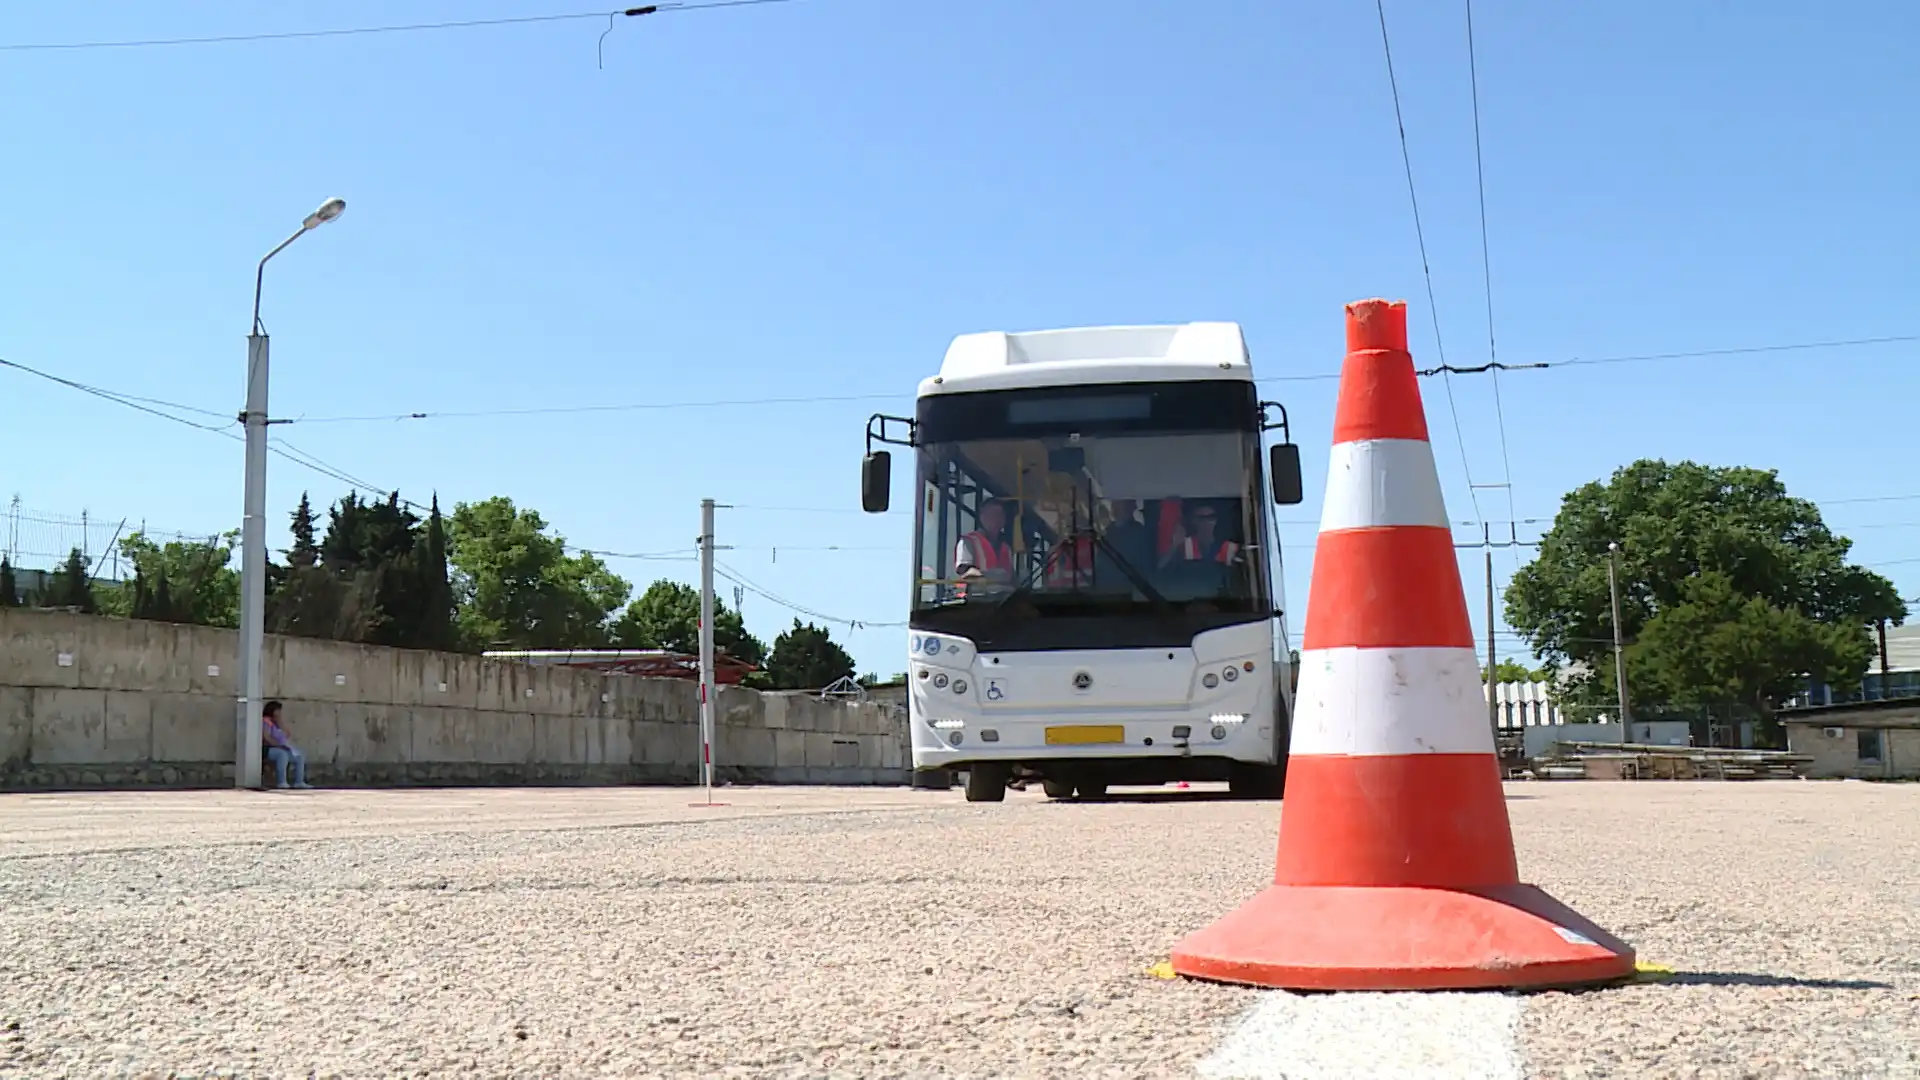 Конкурс профессионального мастерства среди водителей автобусов и троллейбусов прошёл в Севастополе